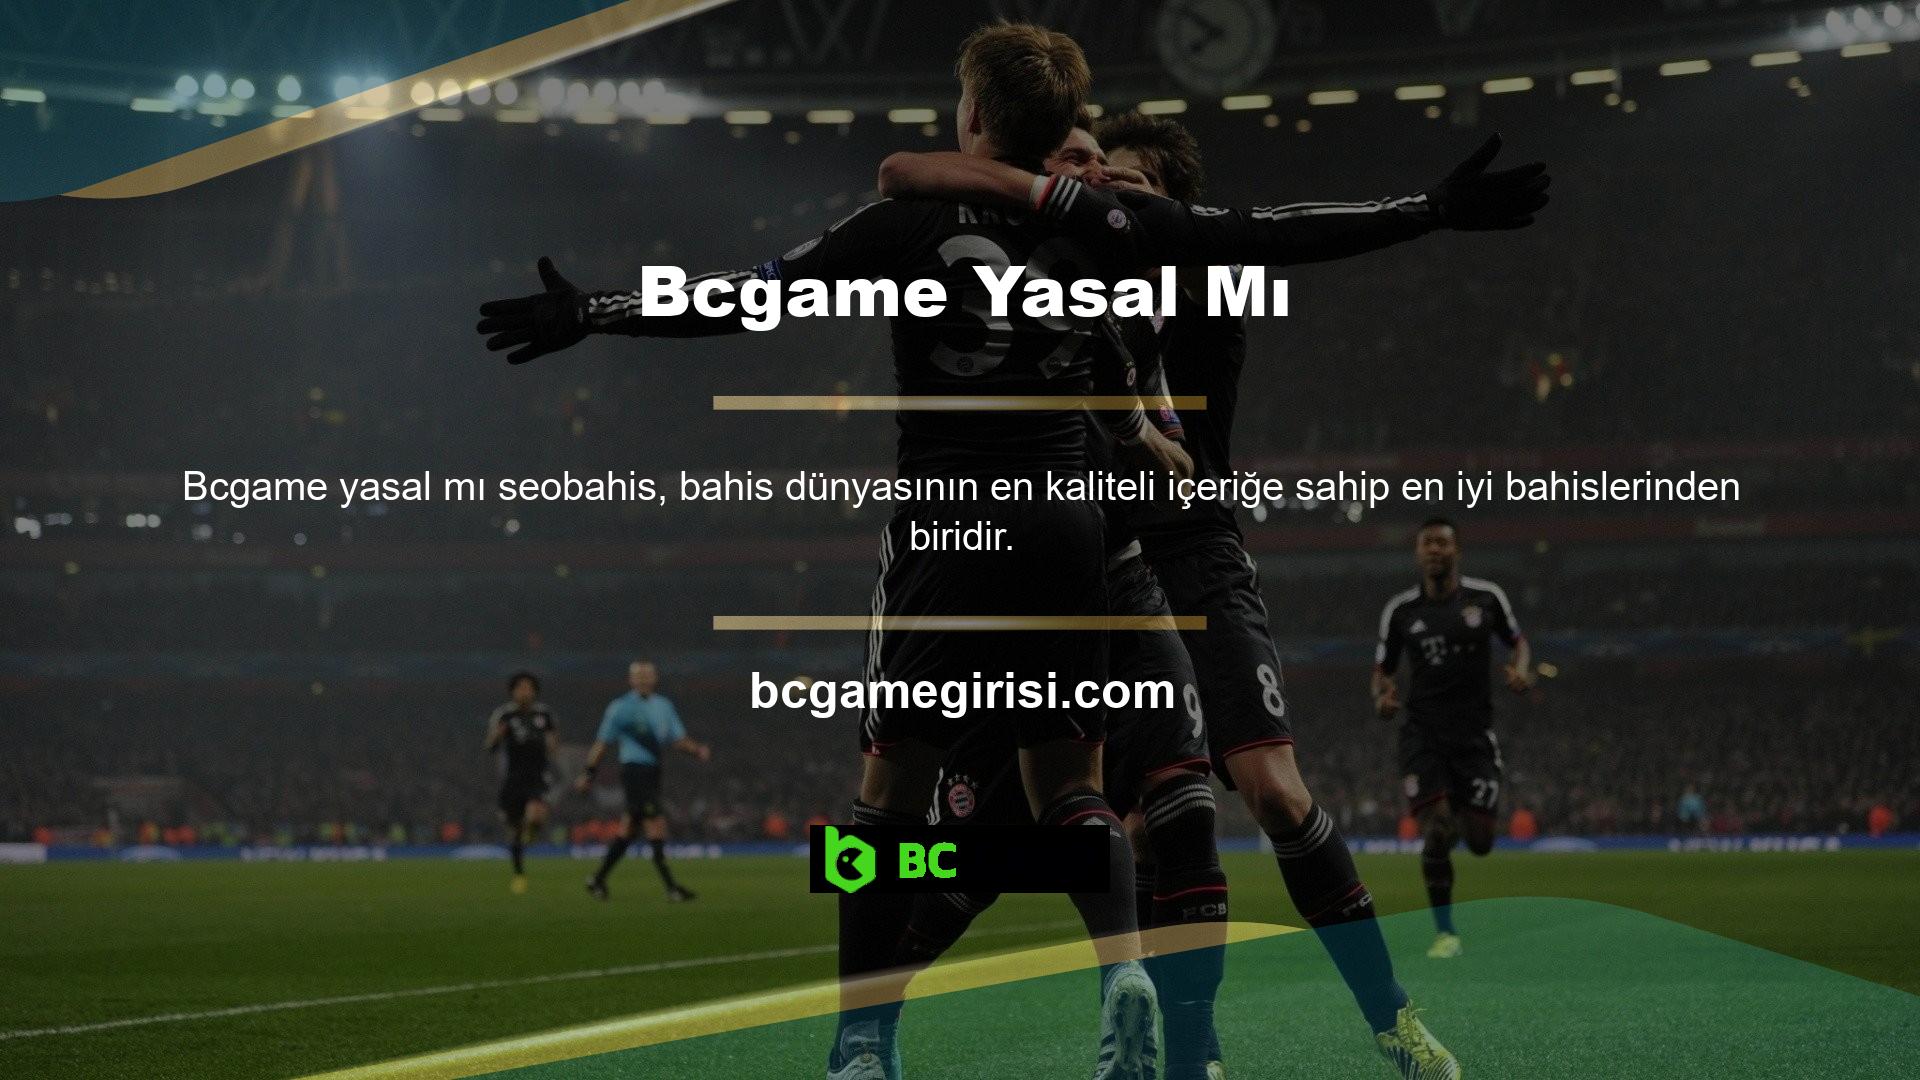 Bcgame, üyelerinin güvenebileceği bir lisansa sahiptir ve aynı zamanda Avrupa'nın en popüler sitelerinden biridir